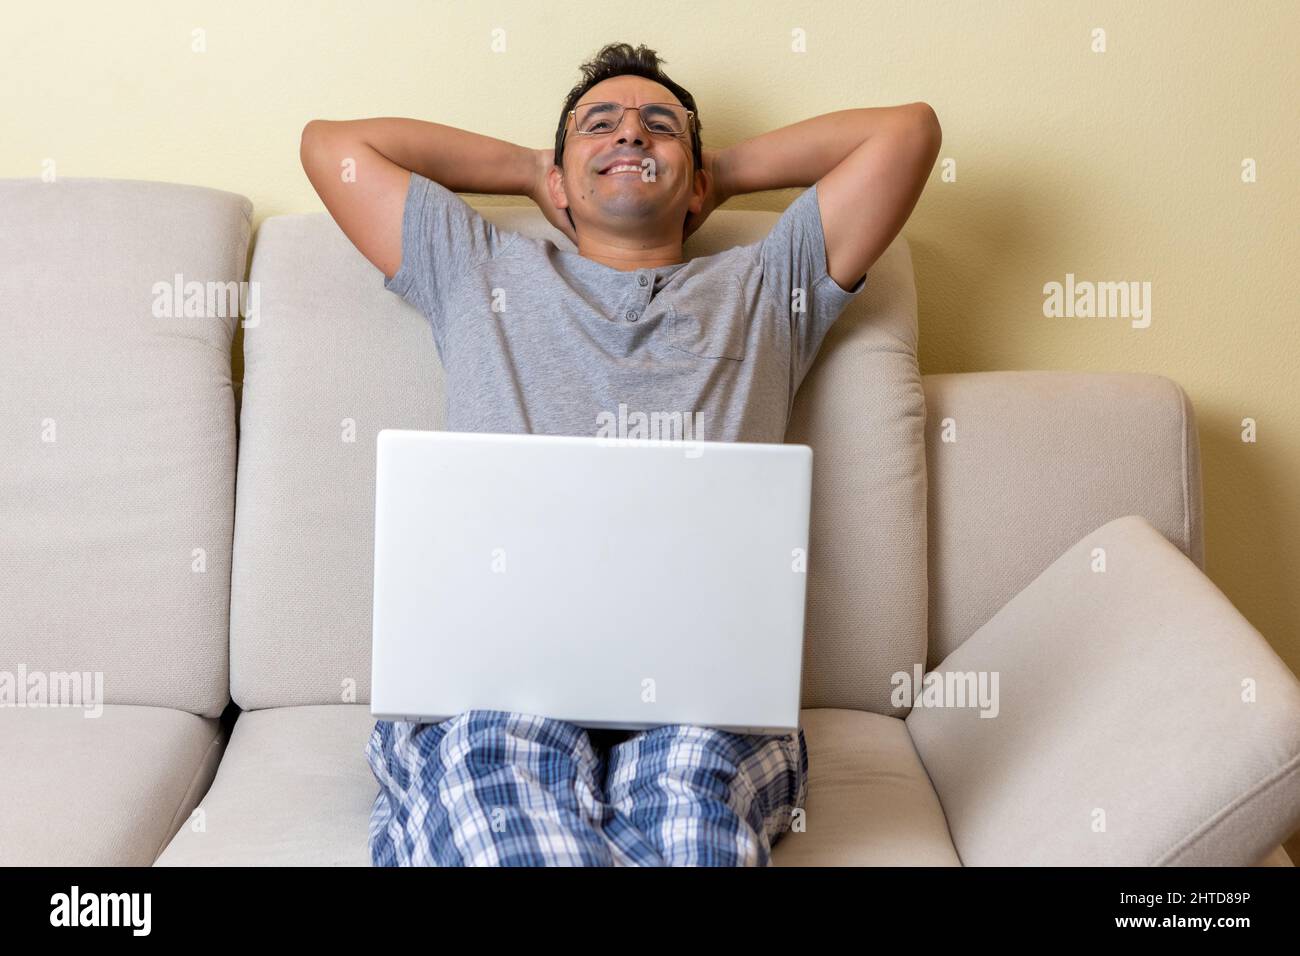 Ein glücklicher, zufriedener junger Mann, der auf einer Couch mit einem Laptop auf den Knien sitzt Stockfoto